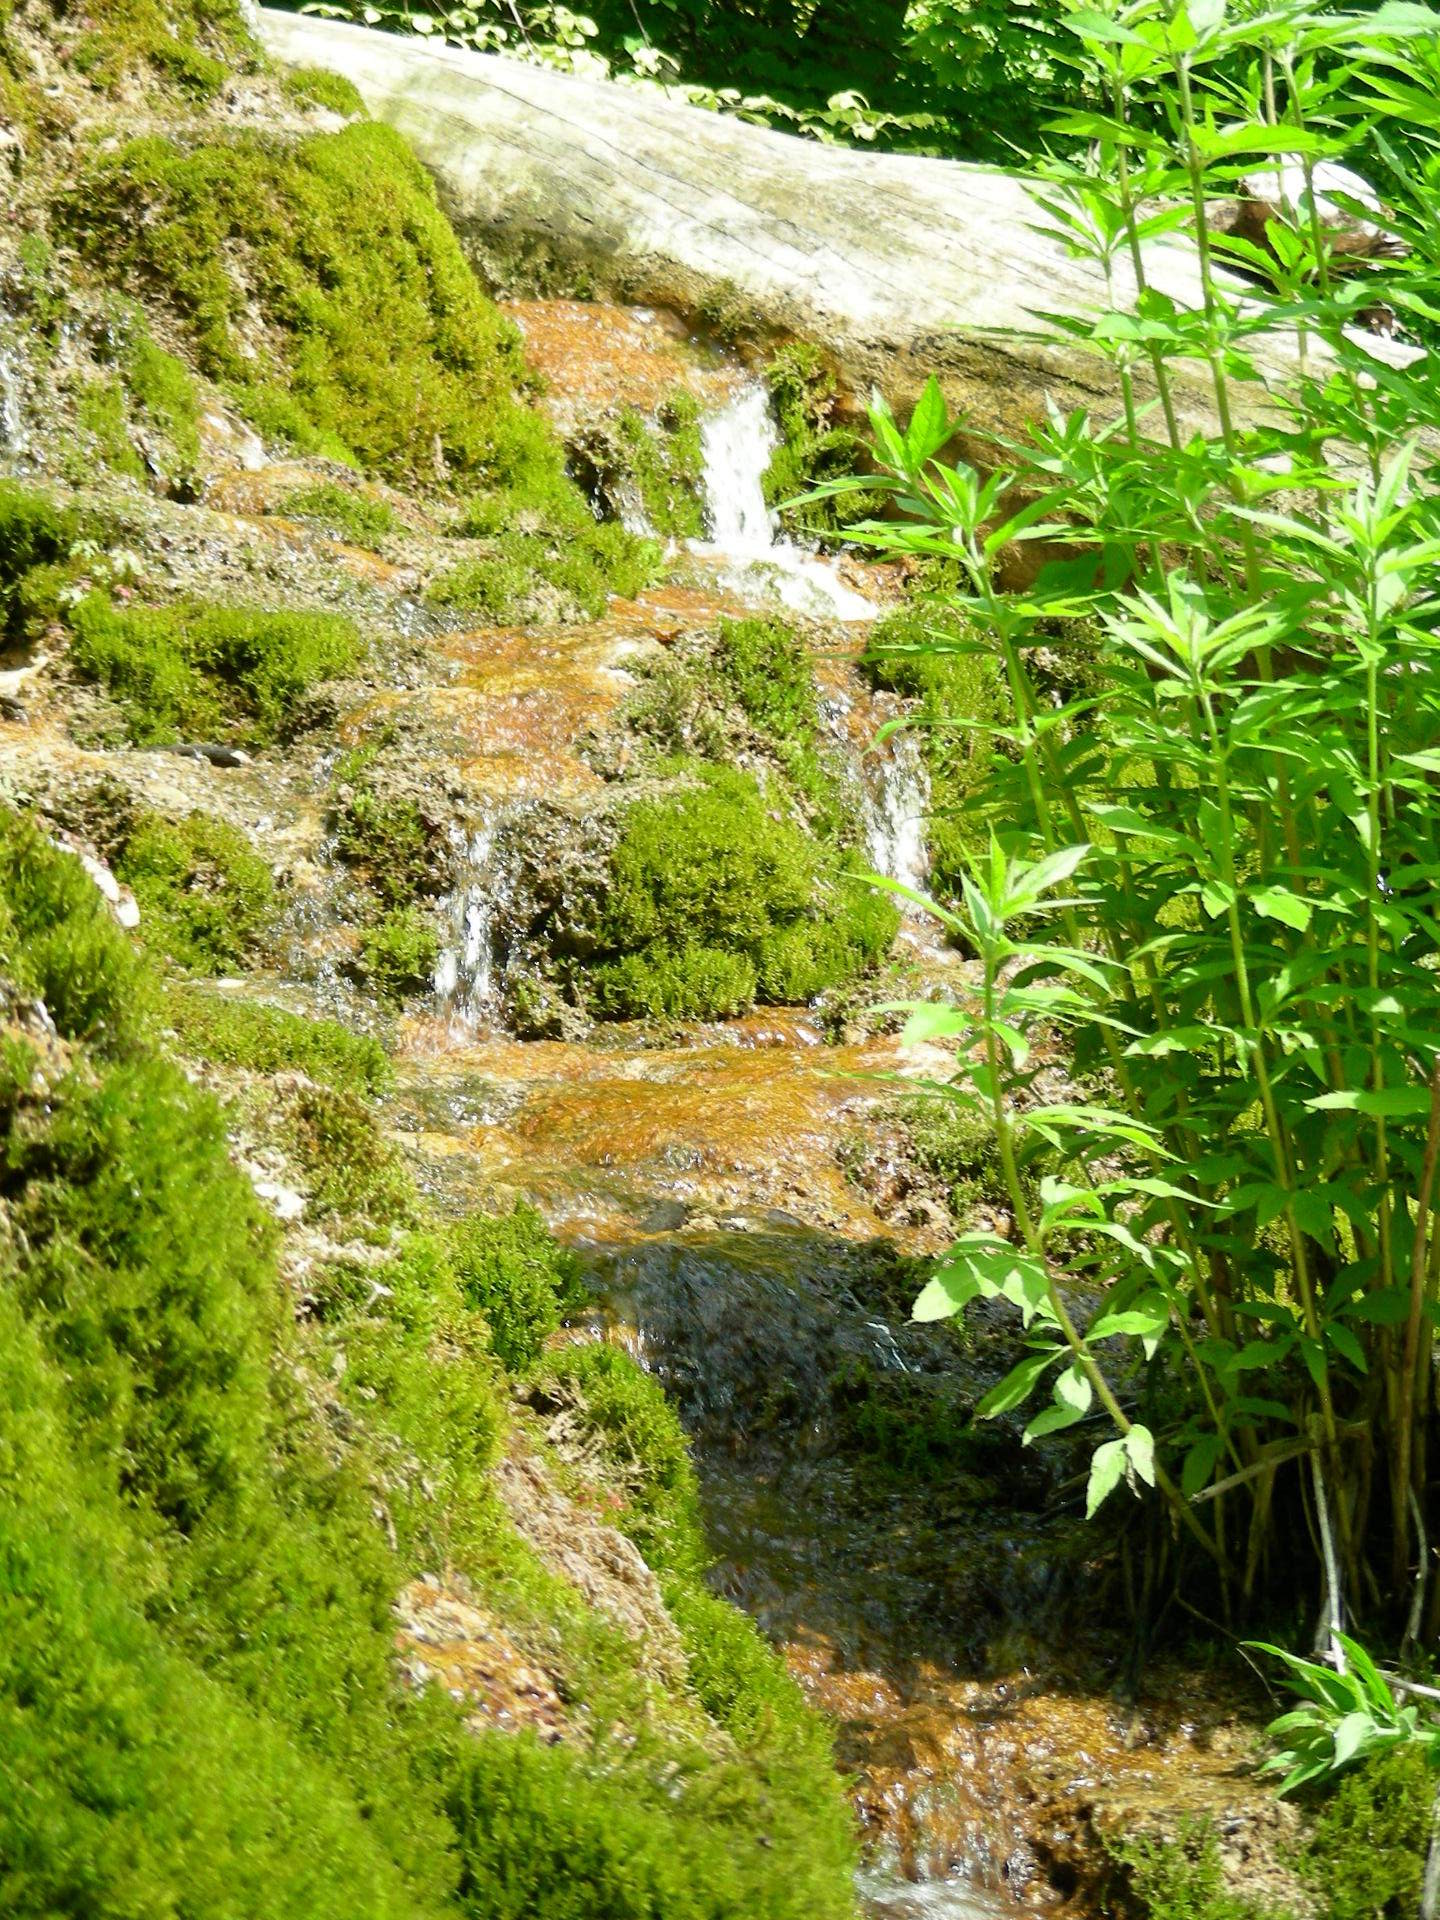 Am Fuße des unteren Wasserfalls: mit Pflanzen und Moos bewachsener Tuffstein